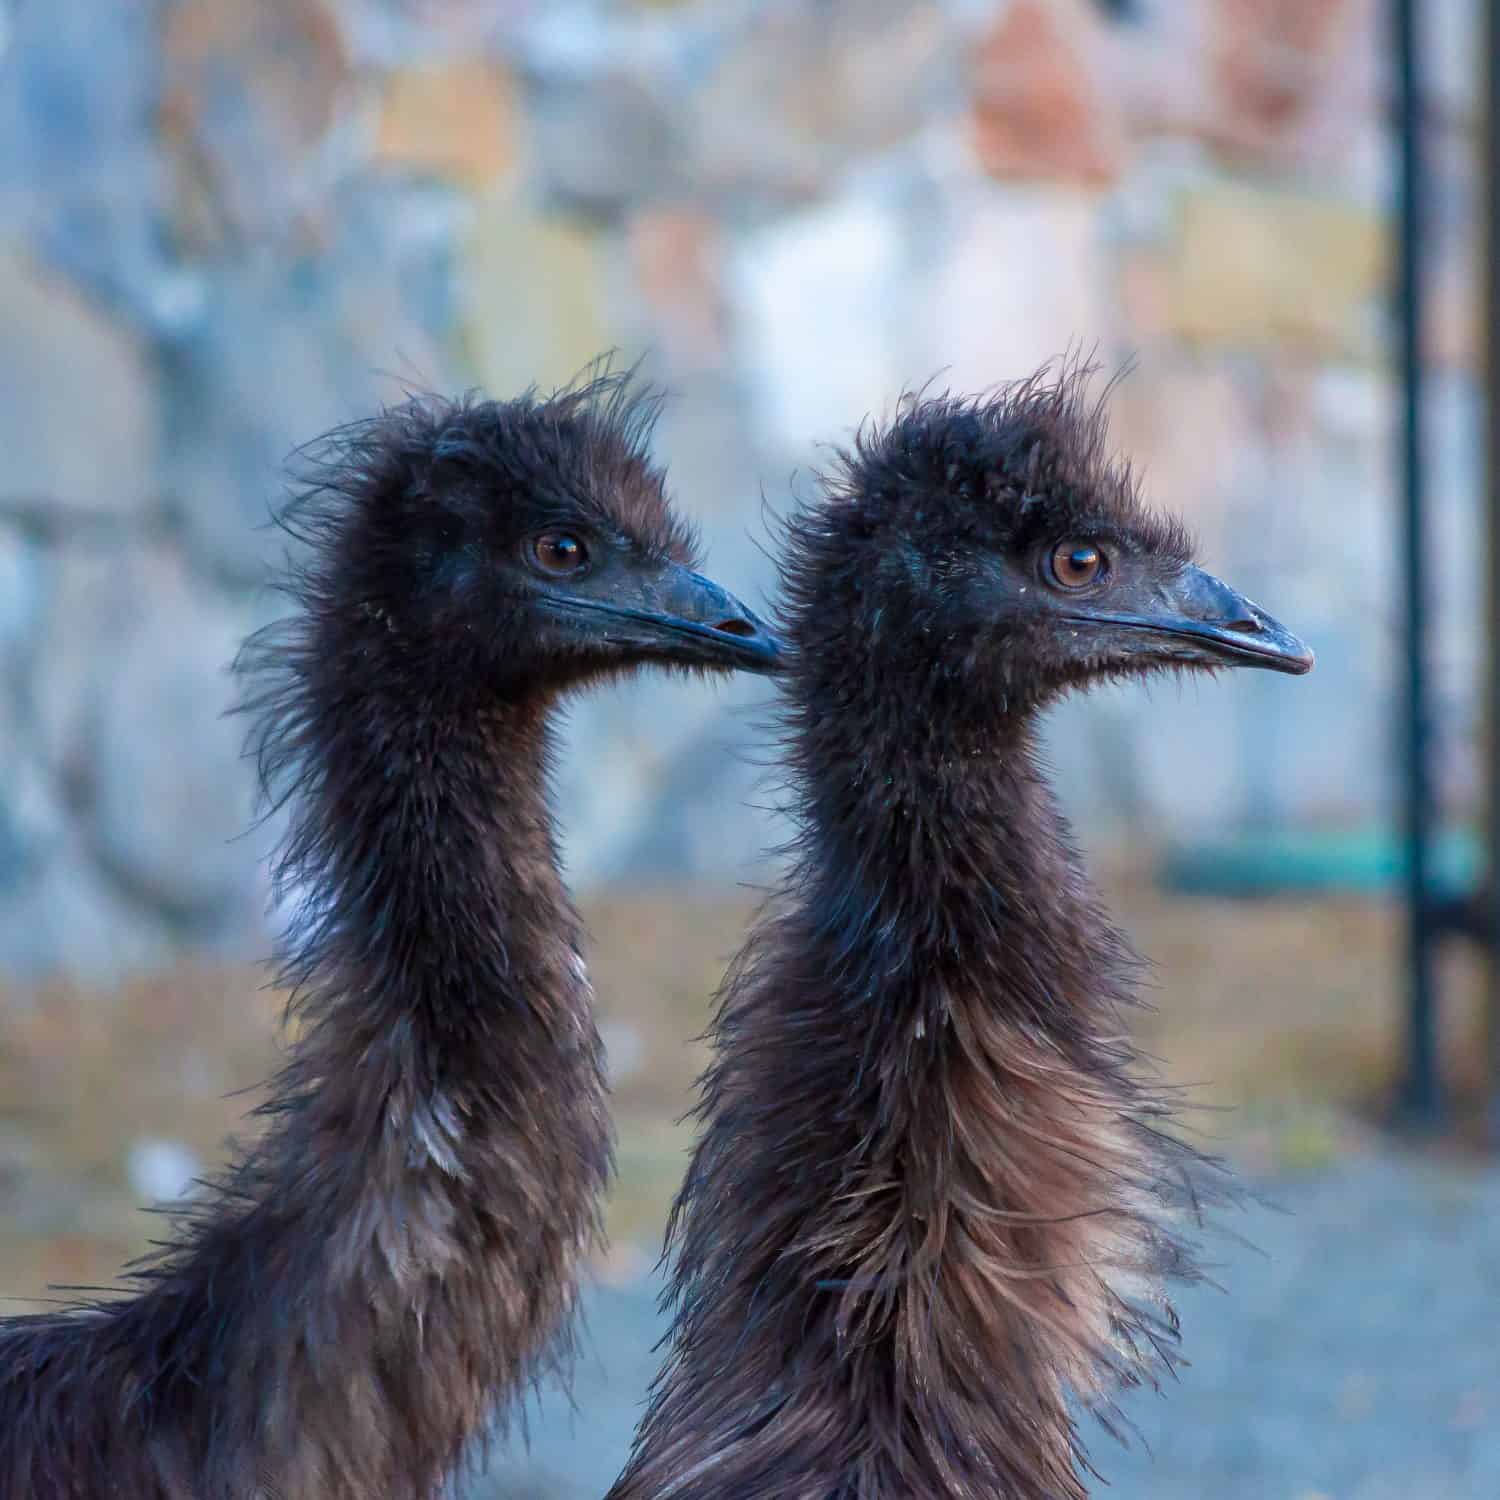 Two emus, an australian big bird similar to an ostrich. 